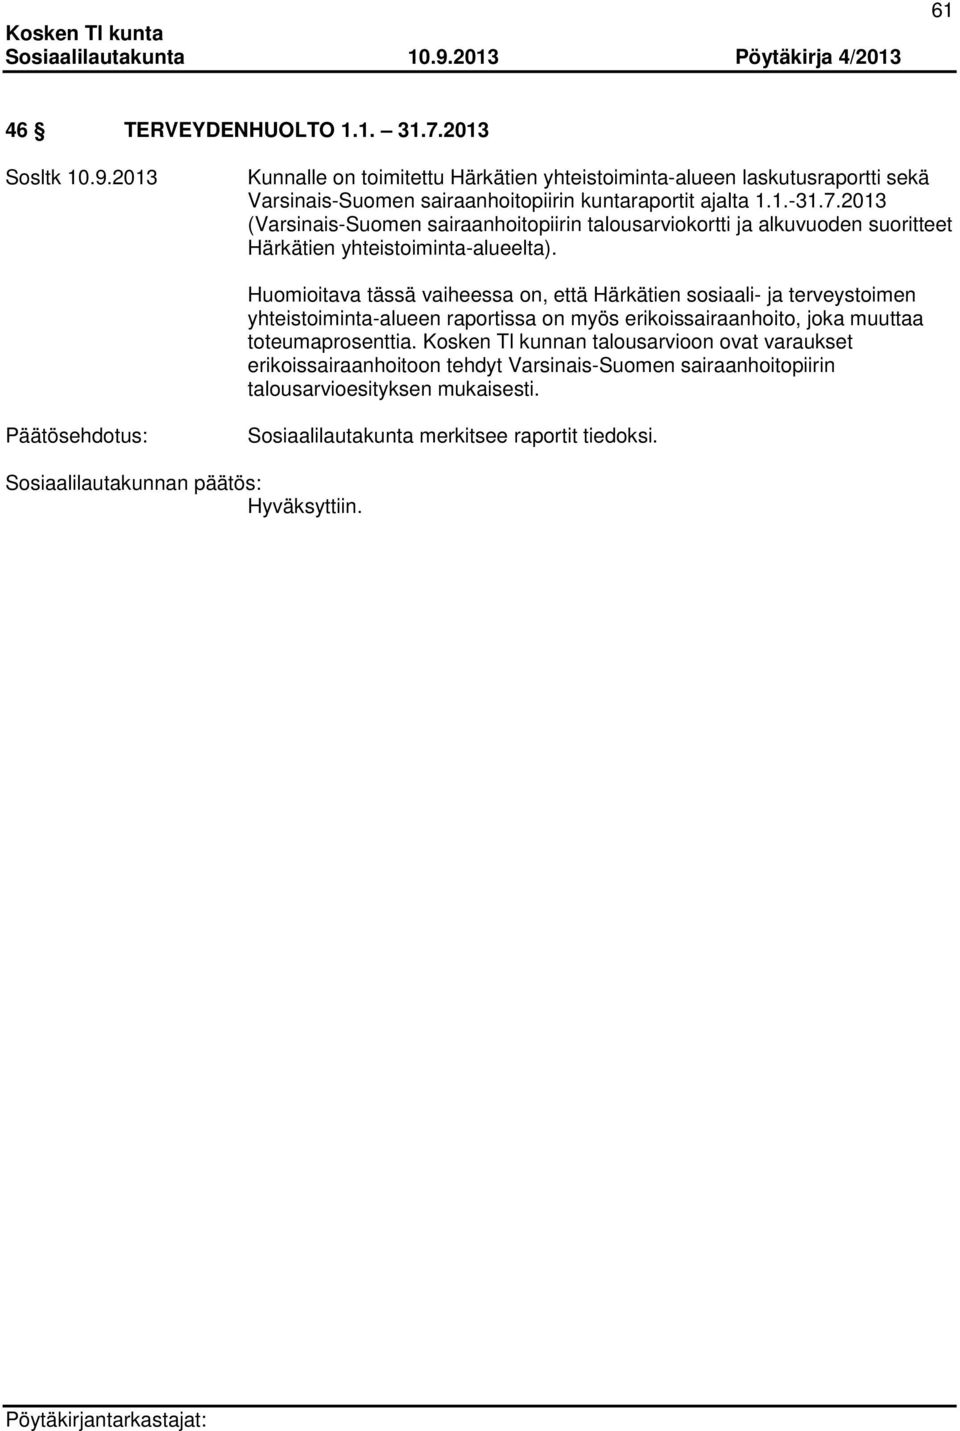 2013 (Varsinais-Suomen sairaanhoitopiirin talousarviokortti ja alkuvuoden suoritteet Härkätien yhteistoiminta-alueelta).